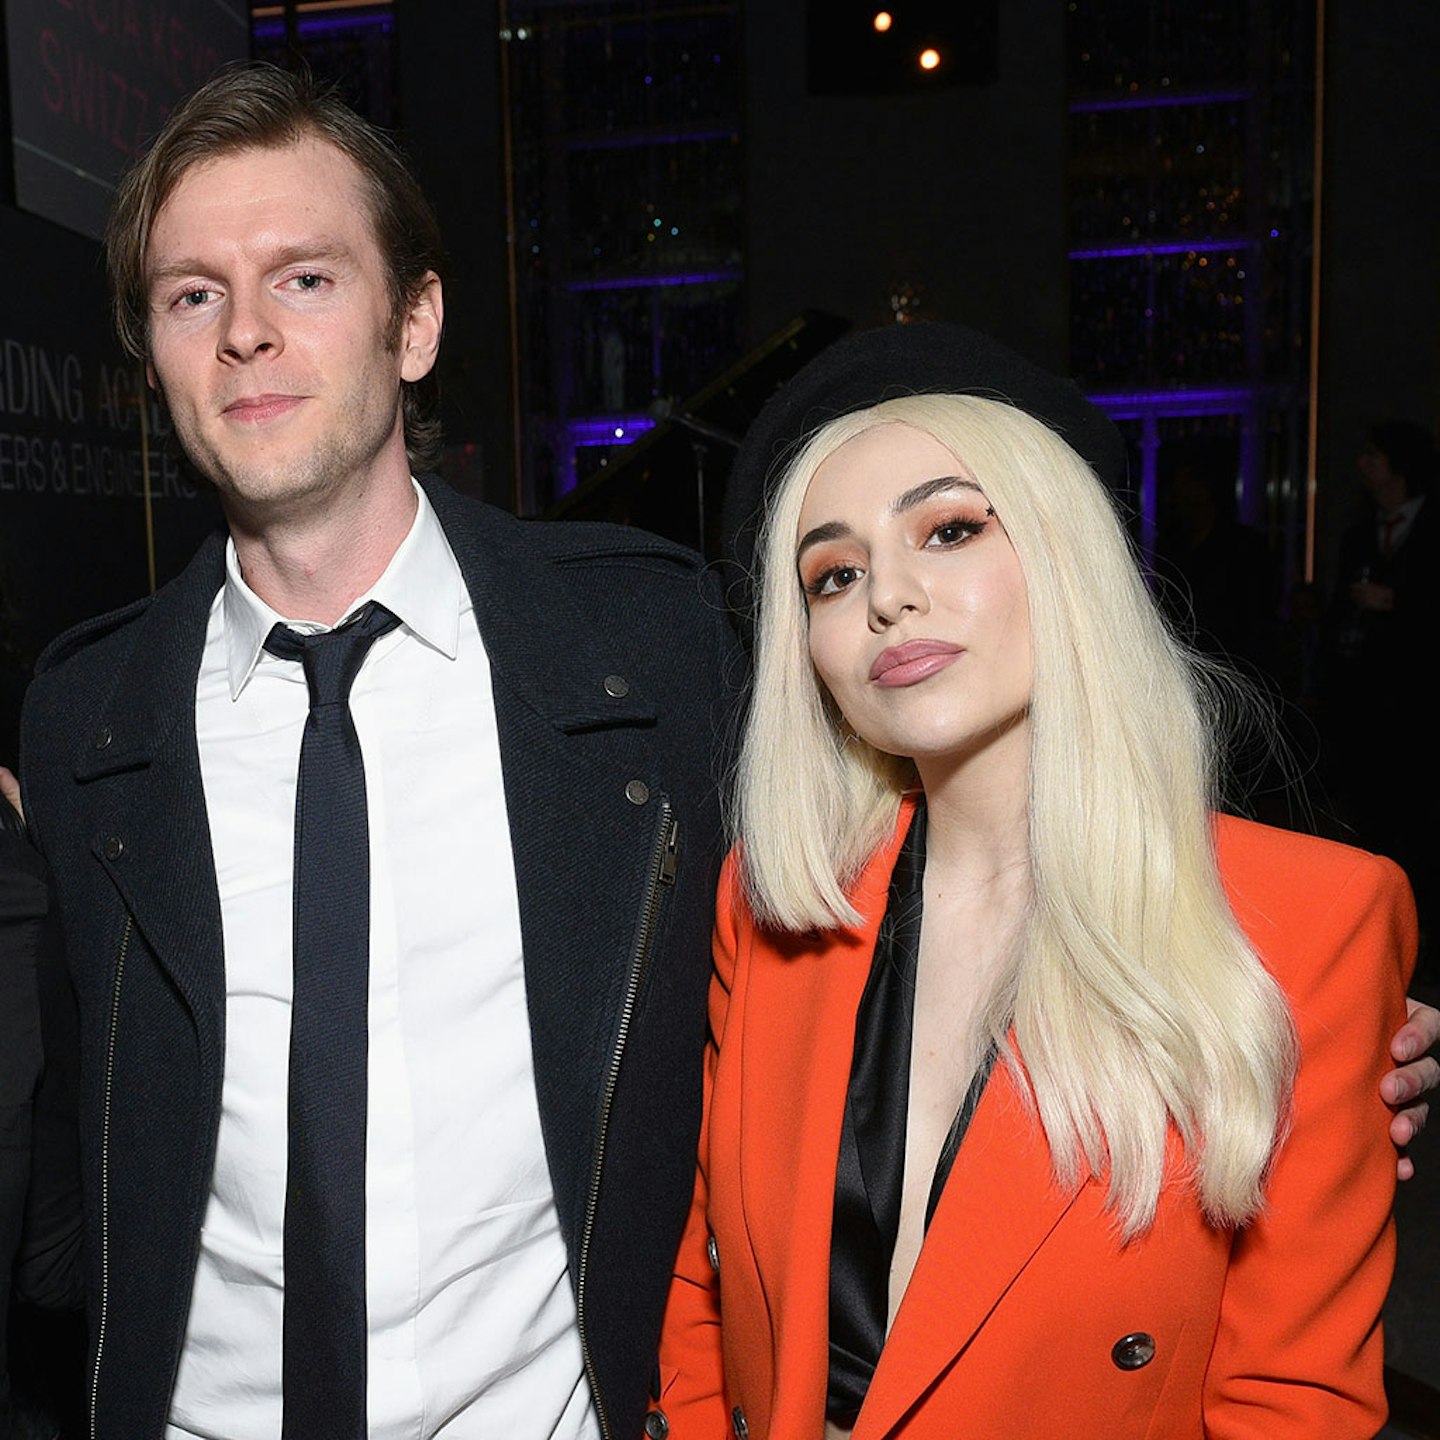 Cirkut and Ava Max at the Grammys 2018